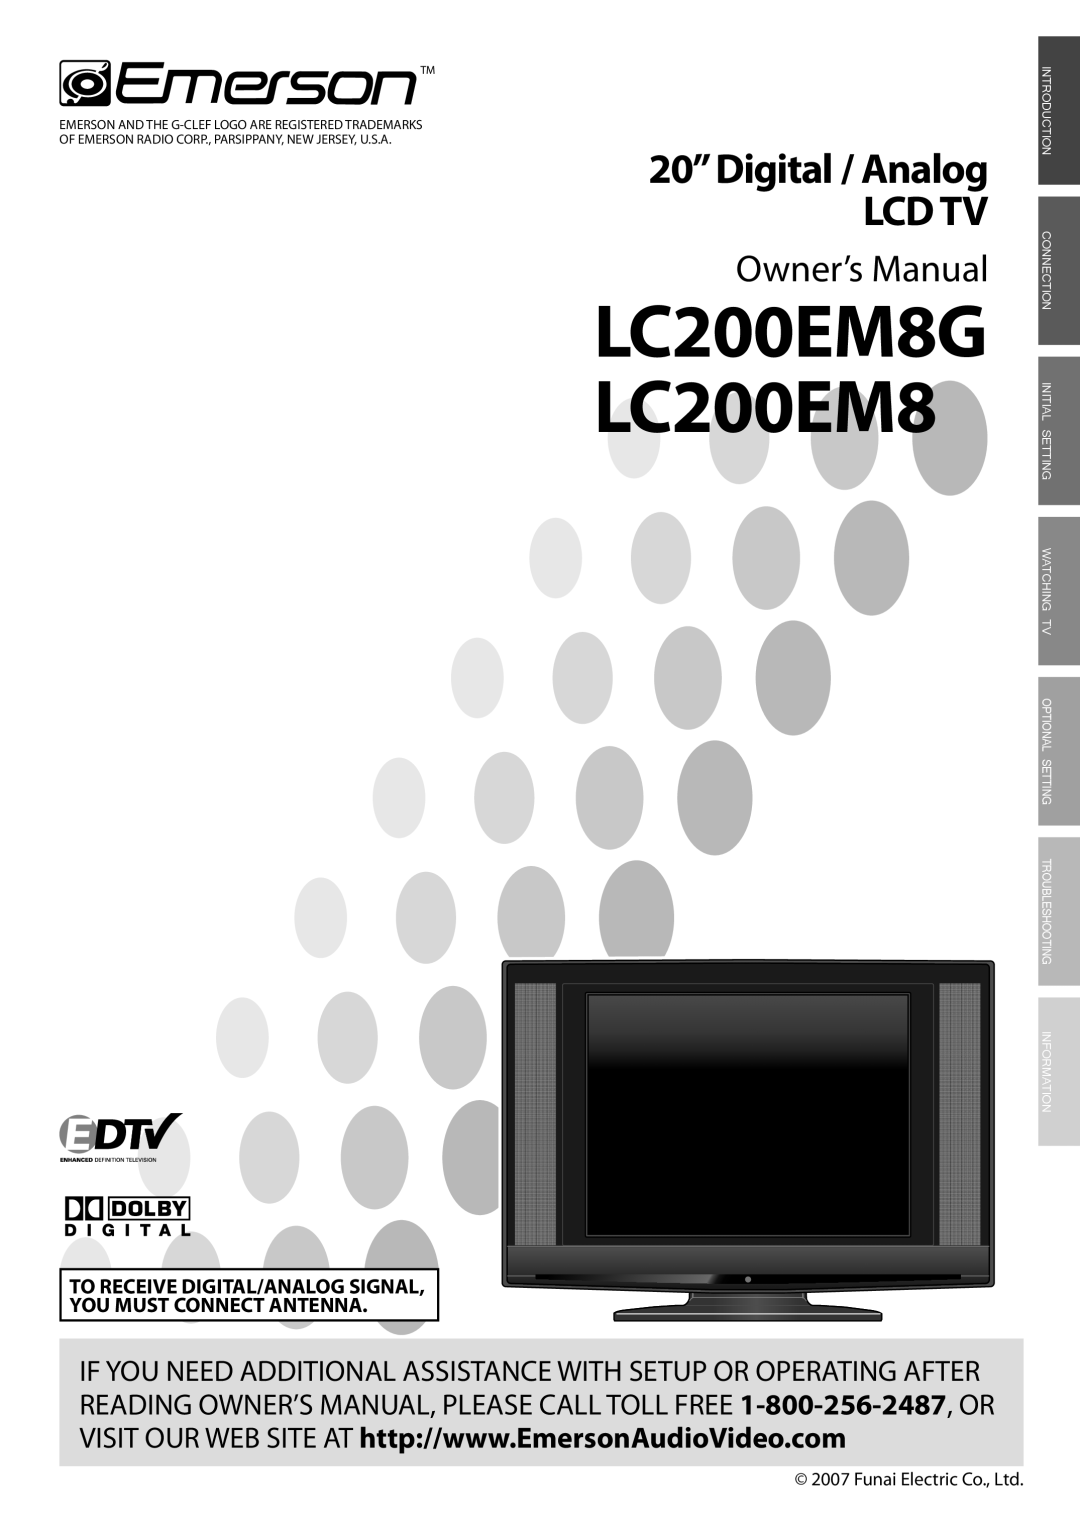 FUNAI owner manual LC200EM8G LC200EM8, 20”Digital / Analog LCD TV, Owner’s Manual 